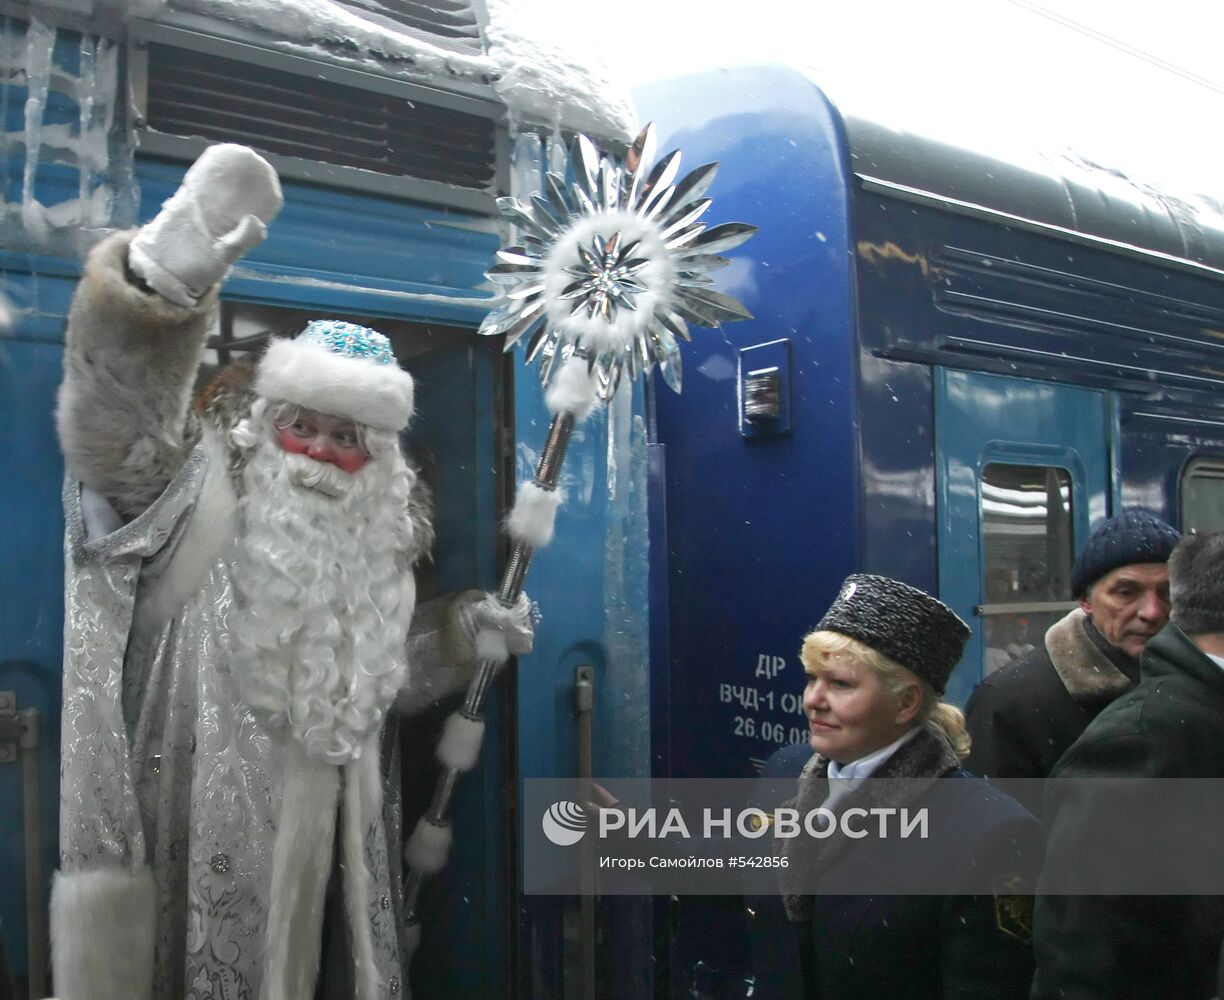 Визит главного Деда Мороза страны в Санкт-Петербург